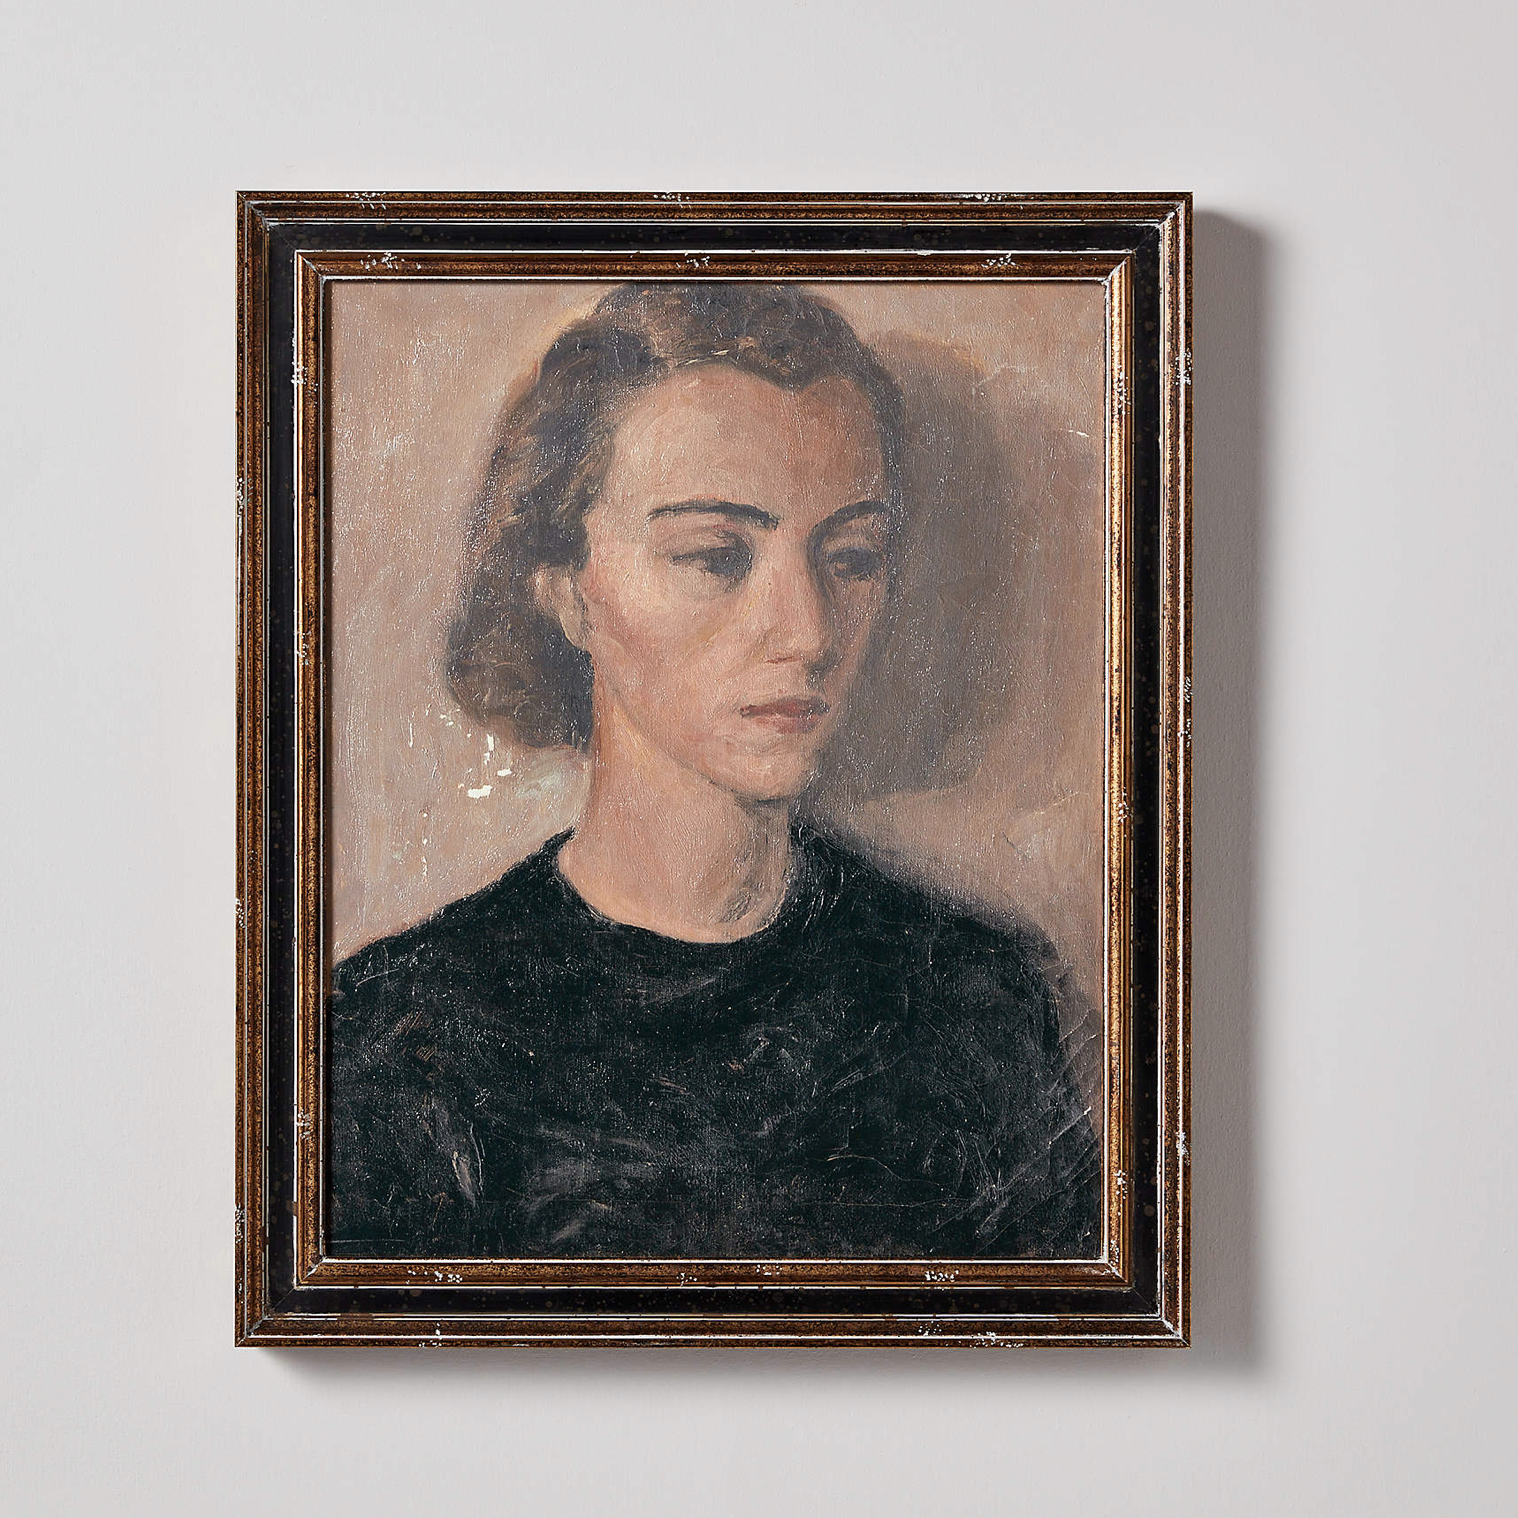 A oil painting portrait